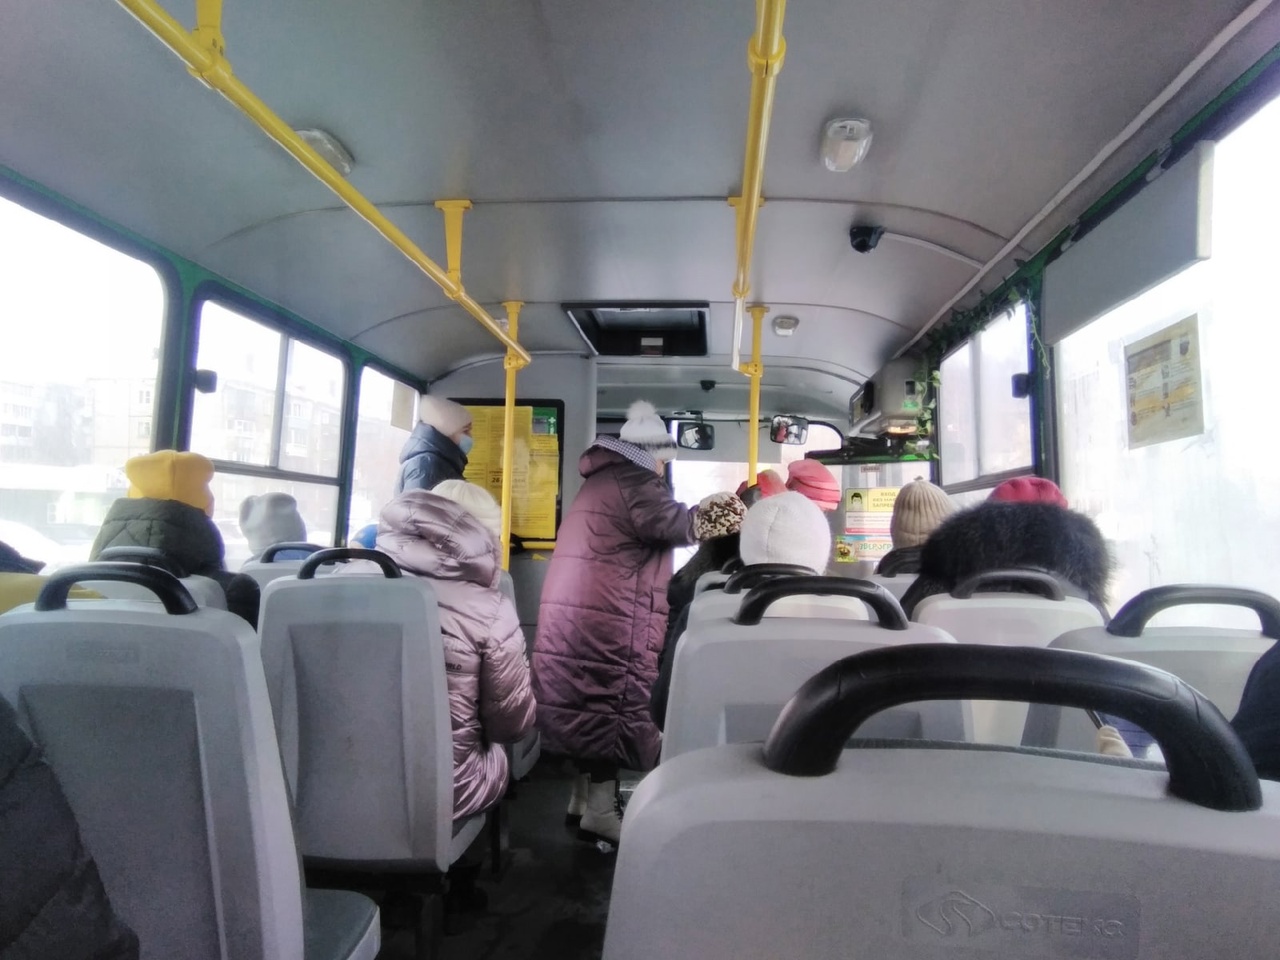 Мэрия Кирова отказалась от введения обещанного нового автобусного маршрута